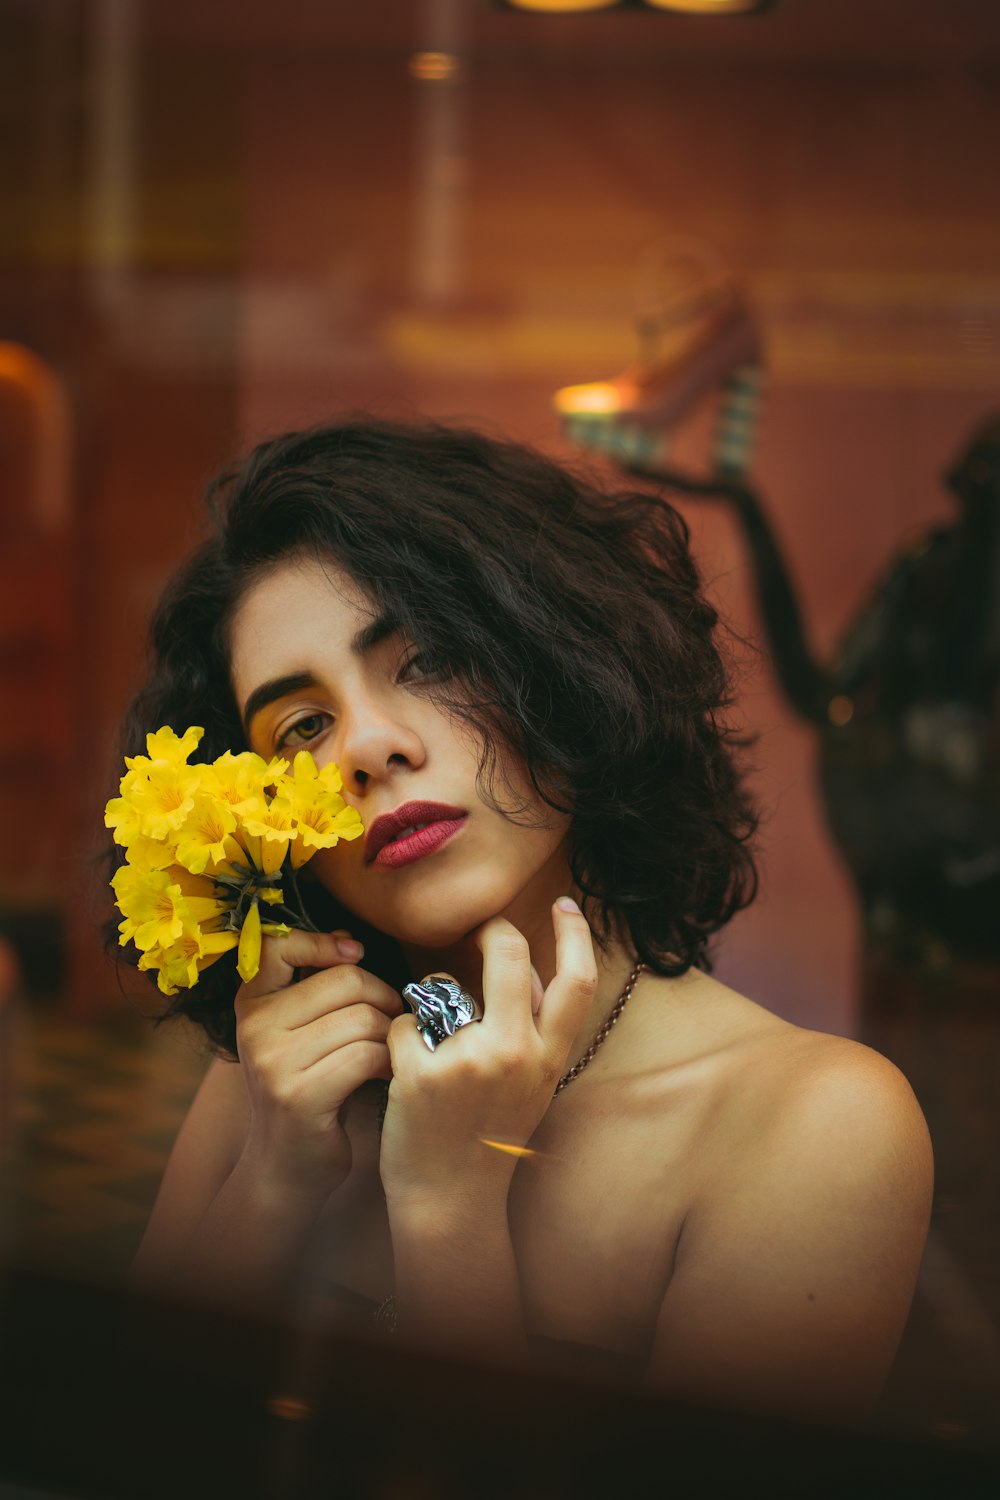 노란 꽃을 들고 있는 여자